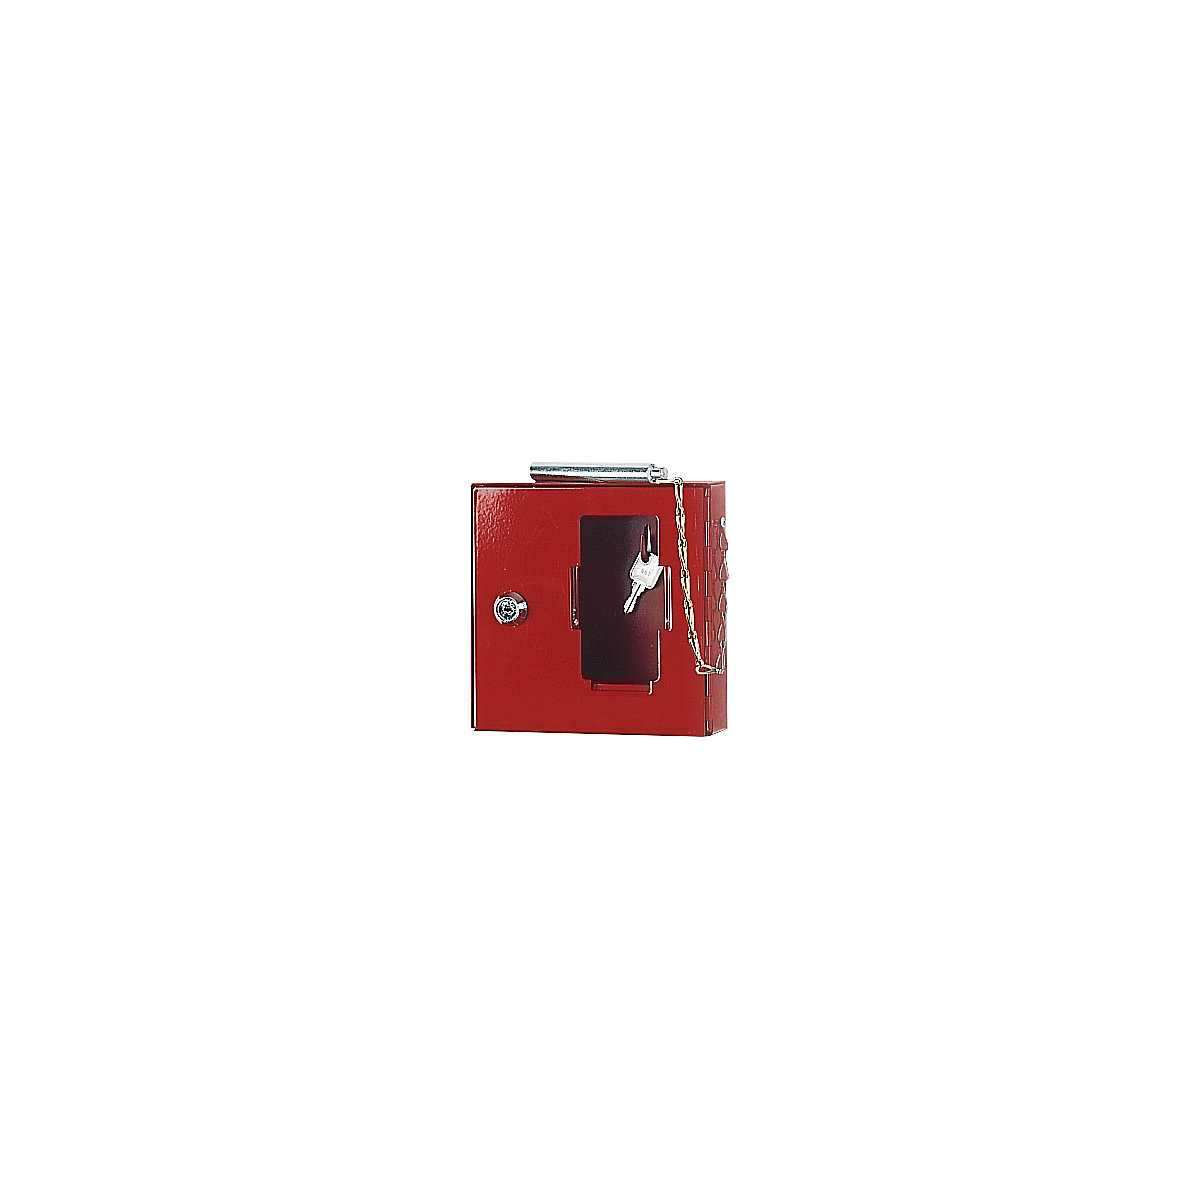 Boîte à clés de secours avec vitre, avec petit marteau pour briser la vitre, h x l x p 200 x 200 x 50 mm, lot de 3-4